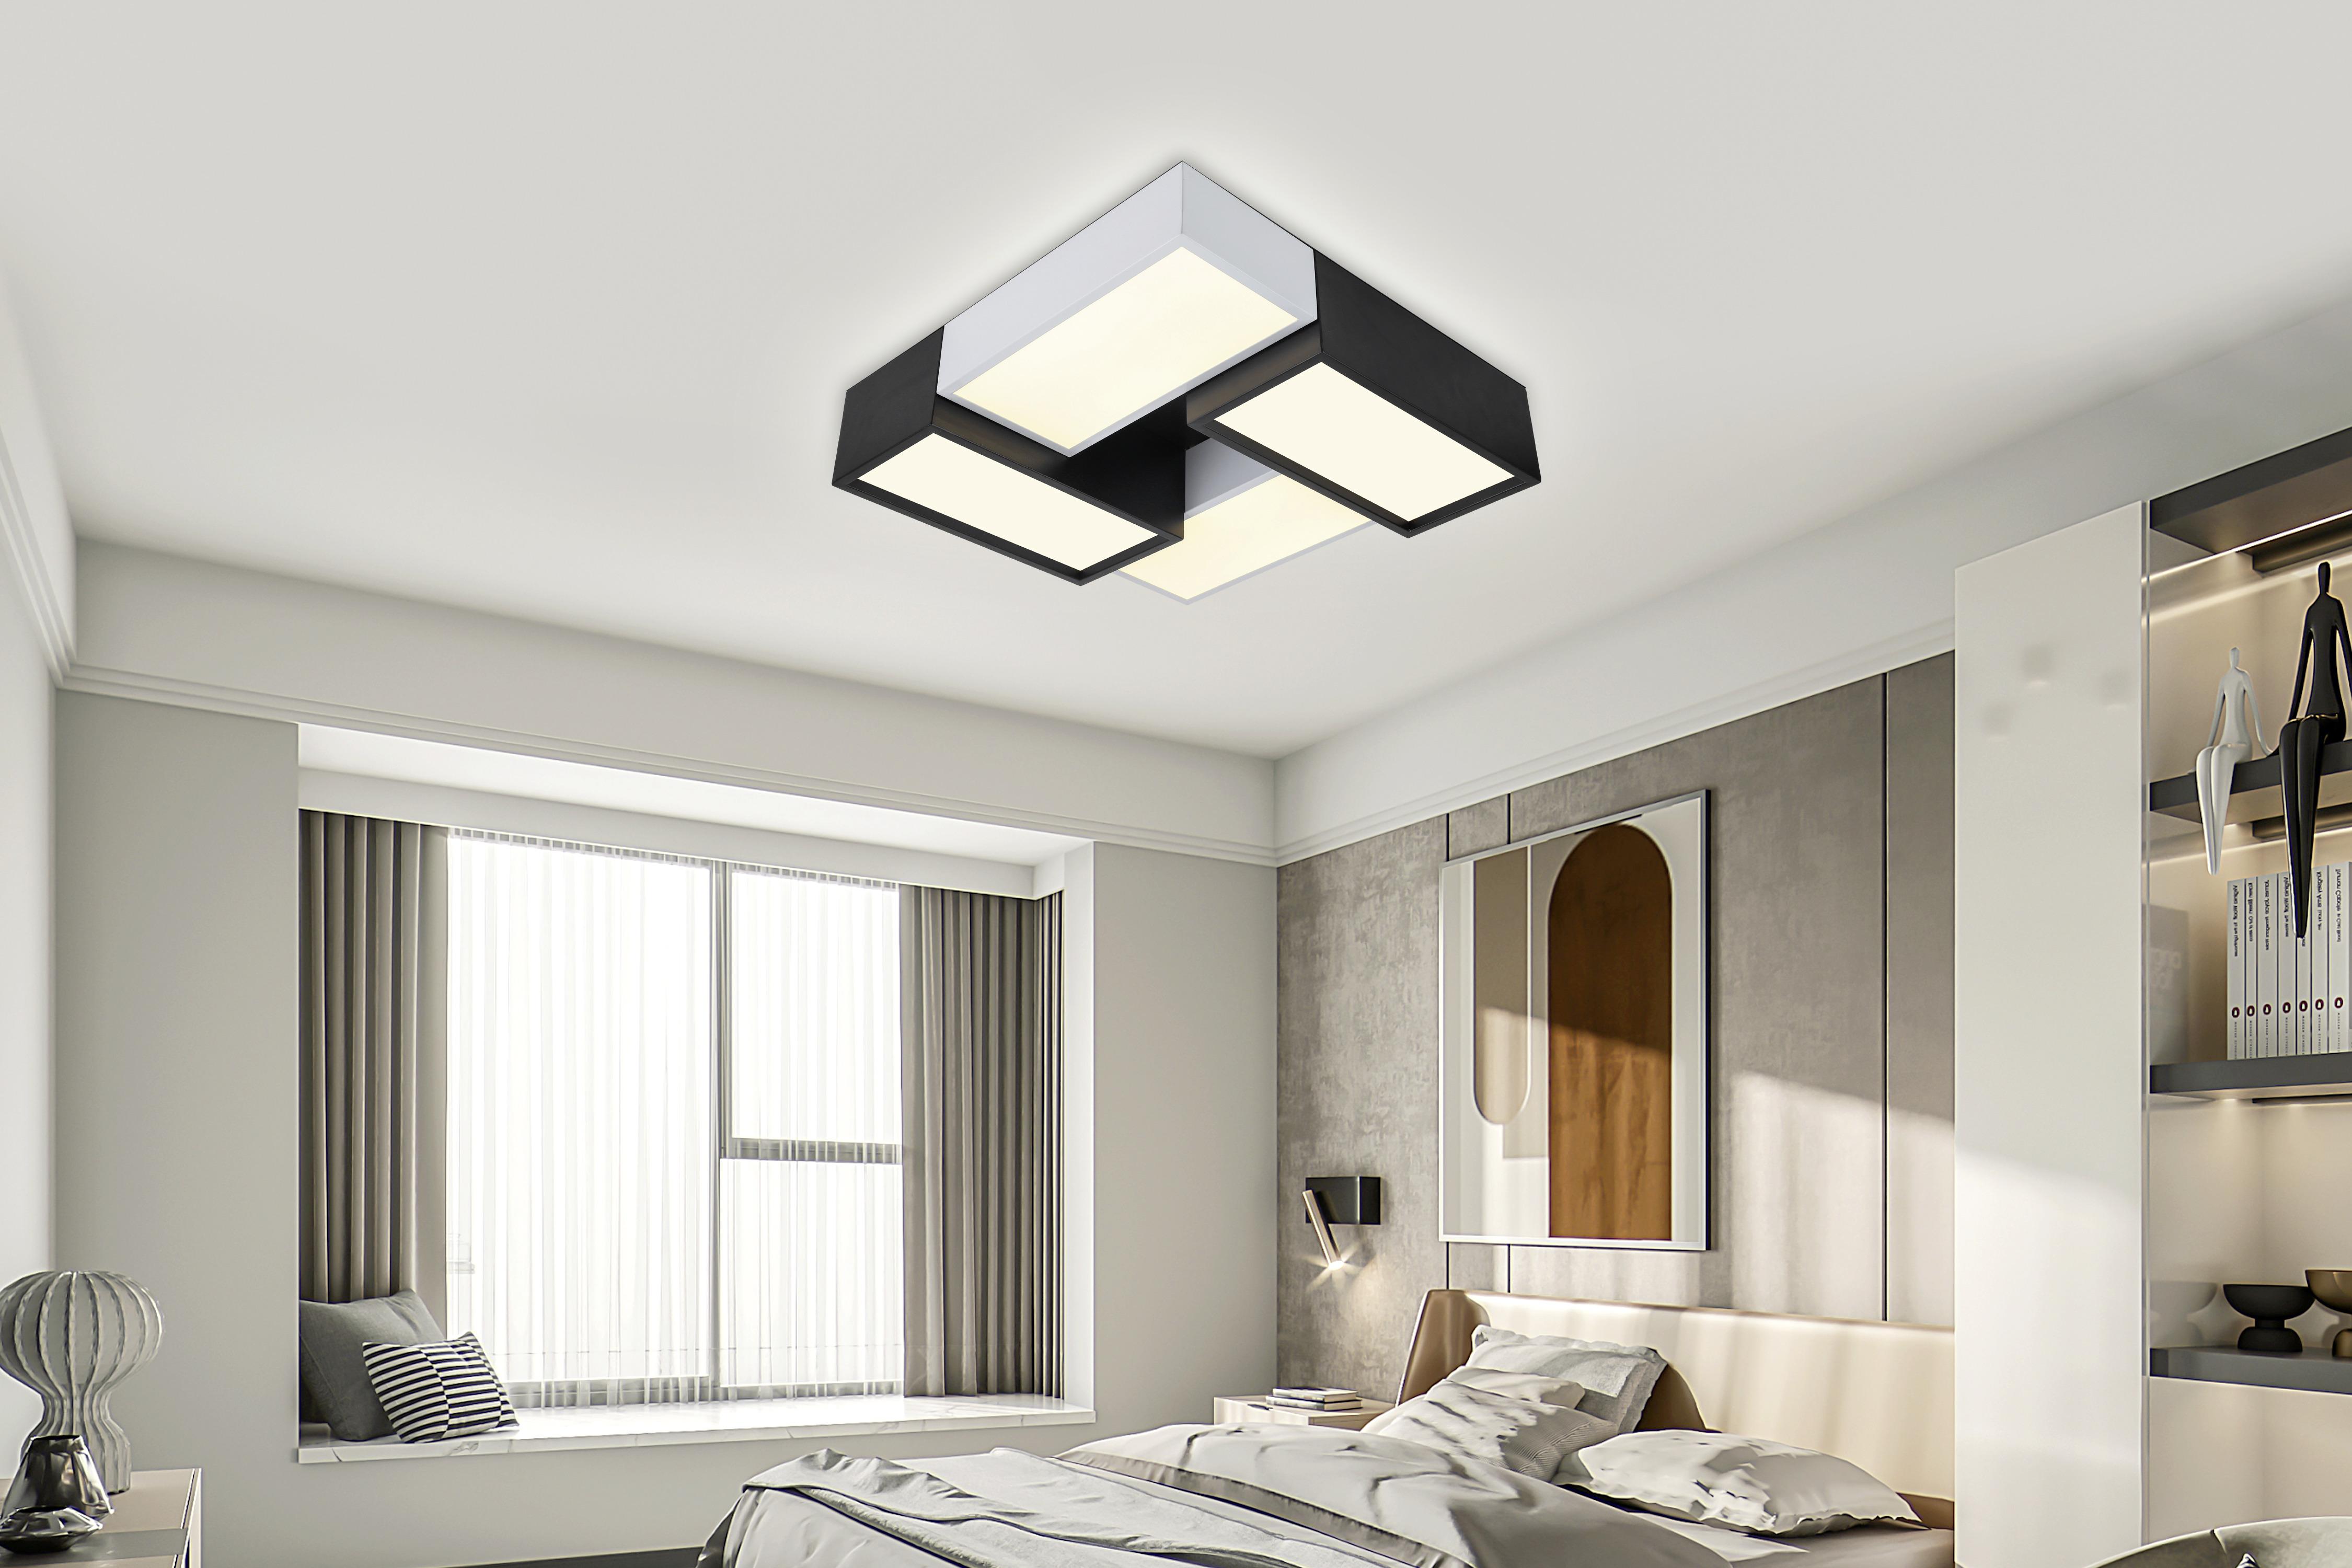 LED-Deckenleuchte Cataleya max. 30 Watt - Schwarz/Grau, MODERN, Kunststoff/Metall (45/45/14cm) - Premium Living